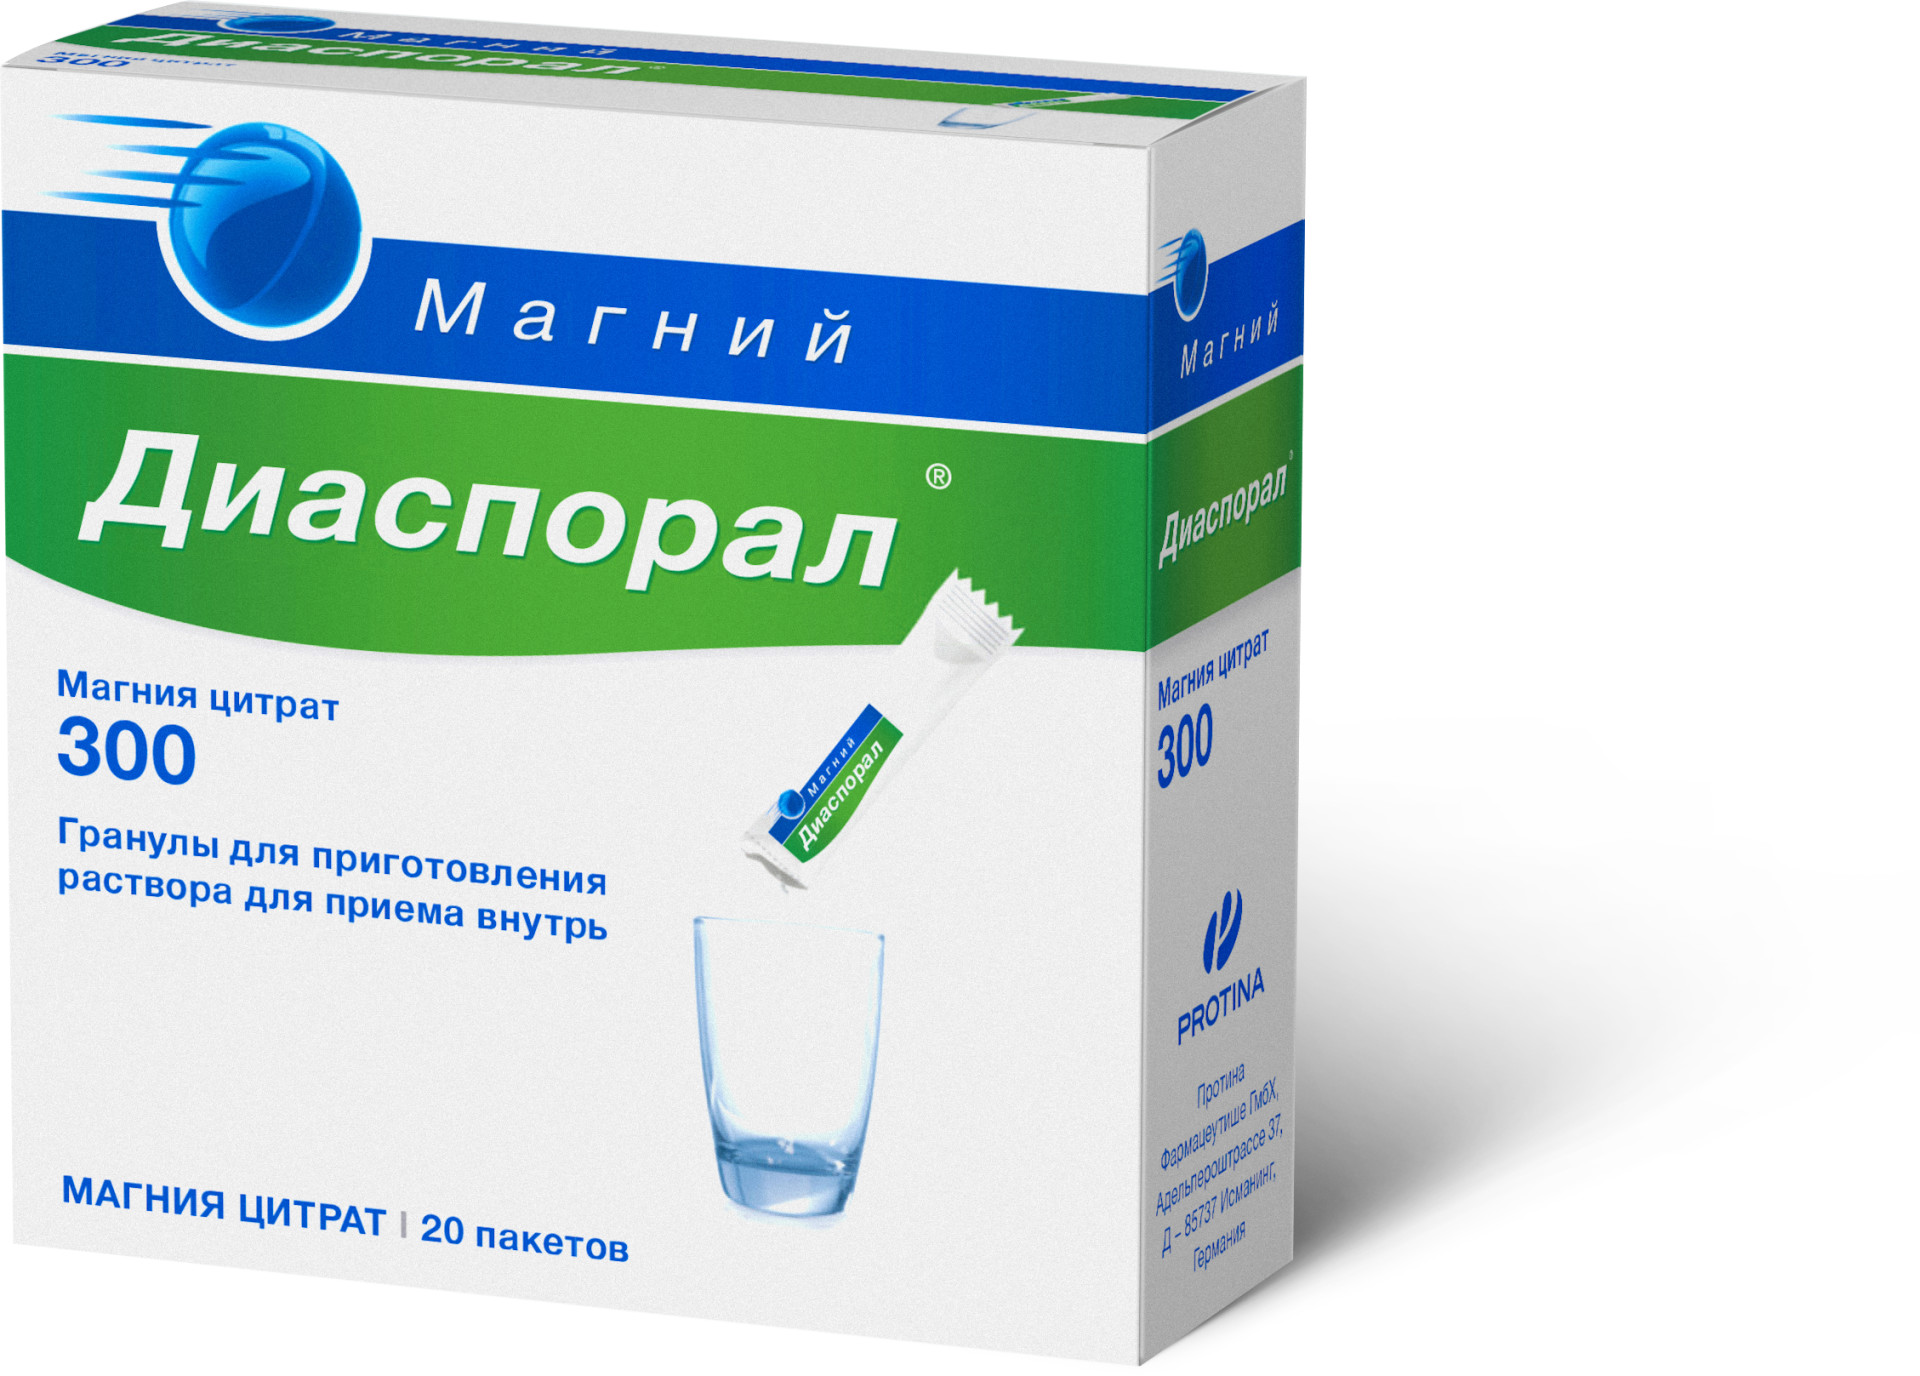 Магний Купить В Аптеке Воронежа